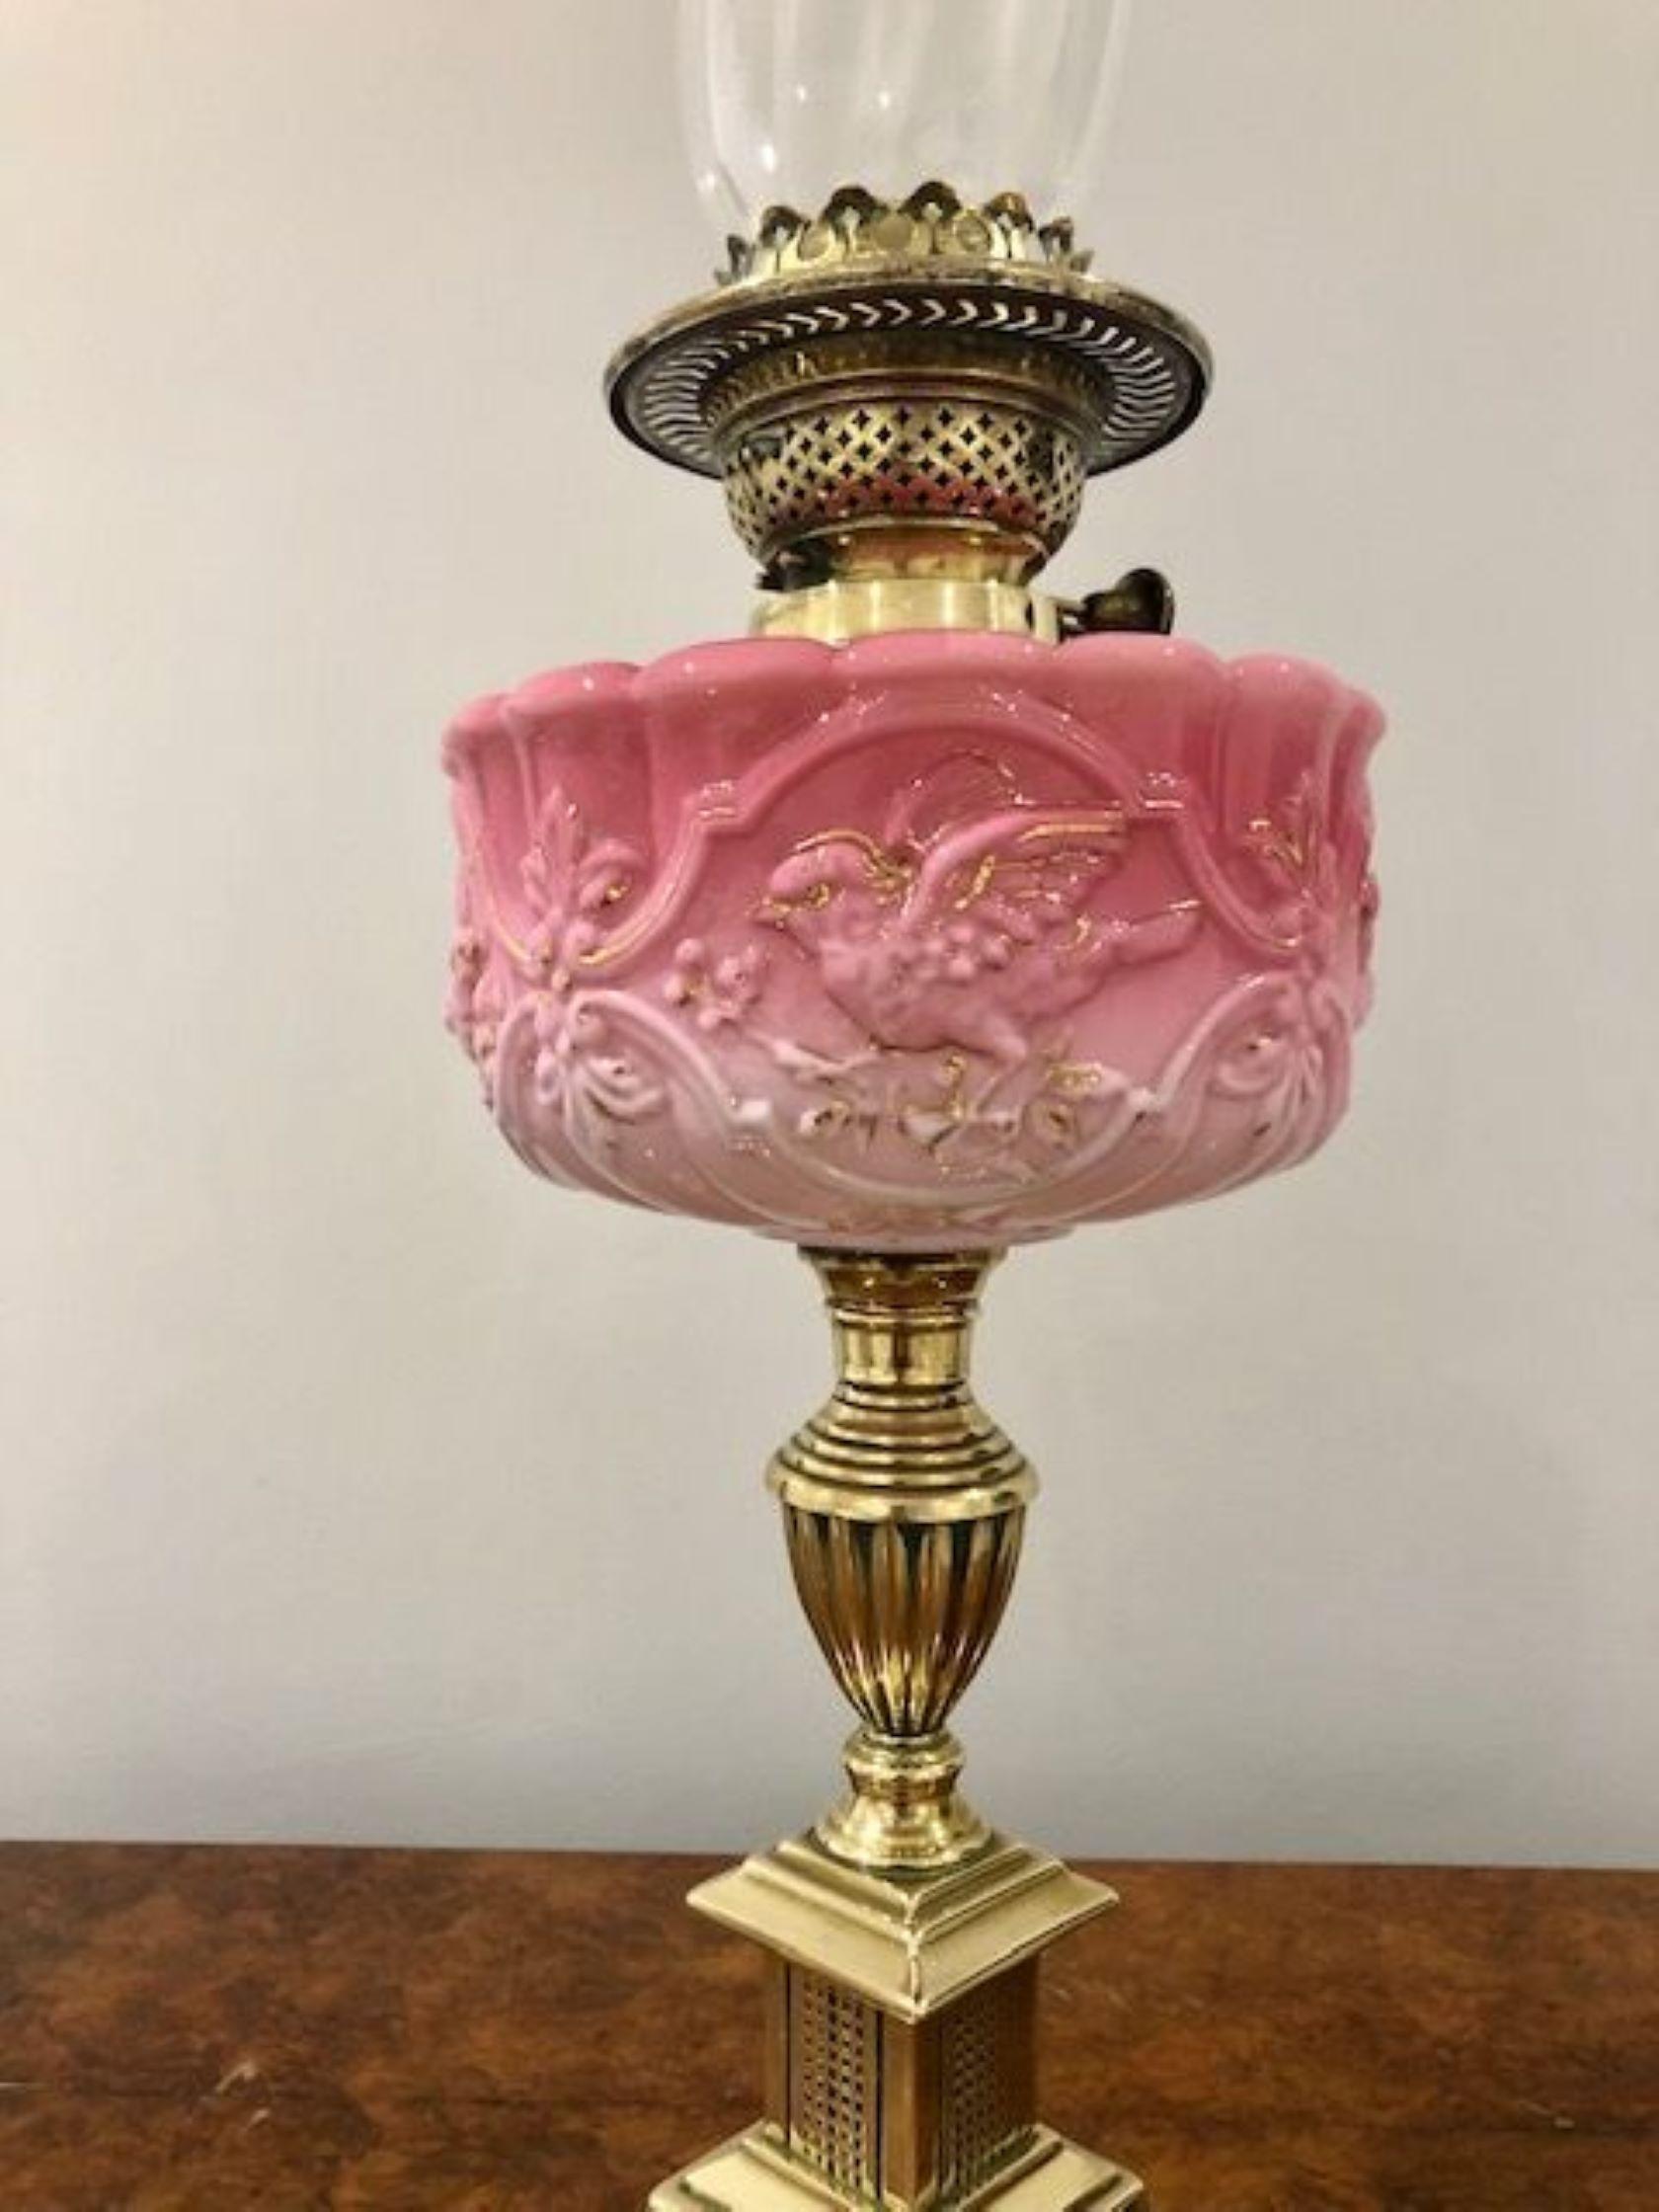 Hervorragende Qualität antiken viktorianischen Öllampe mit einer Qualität dekoriert Glasschirm und Glas Schornstein mit einem doppelten Messing-Brenner, schöne verzierte rosa Glas Reservoir von einem Messing gedreht Spalte stehen auf einem